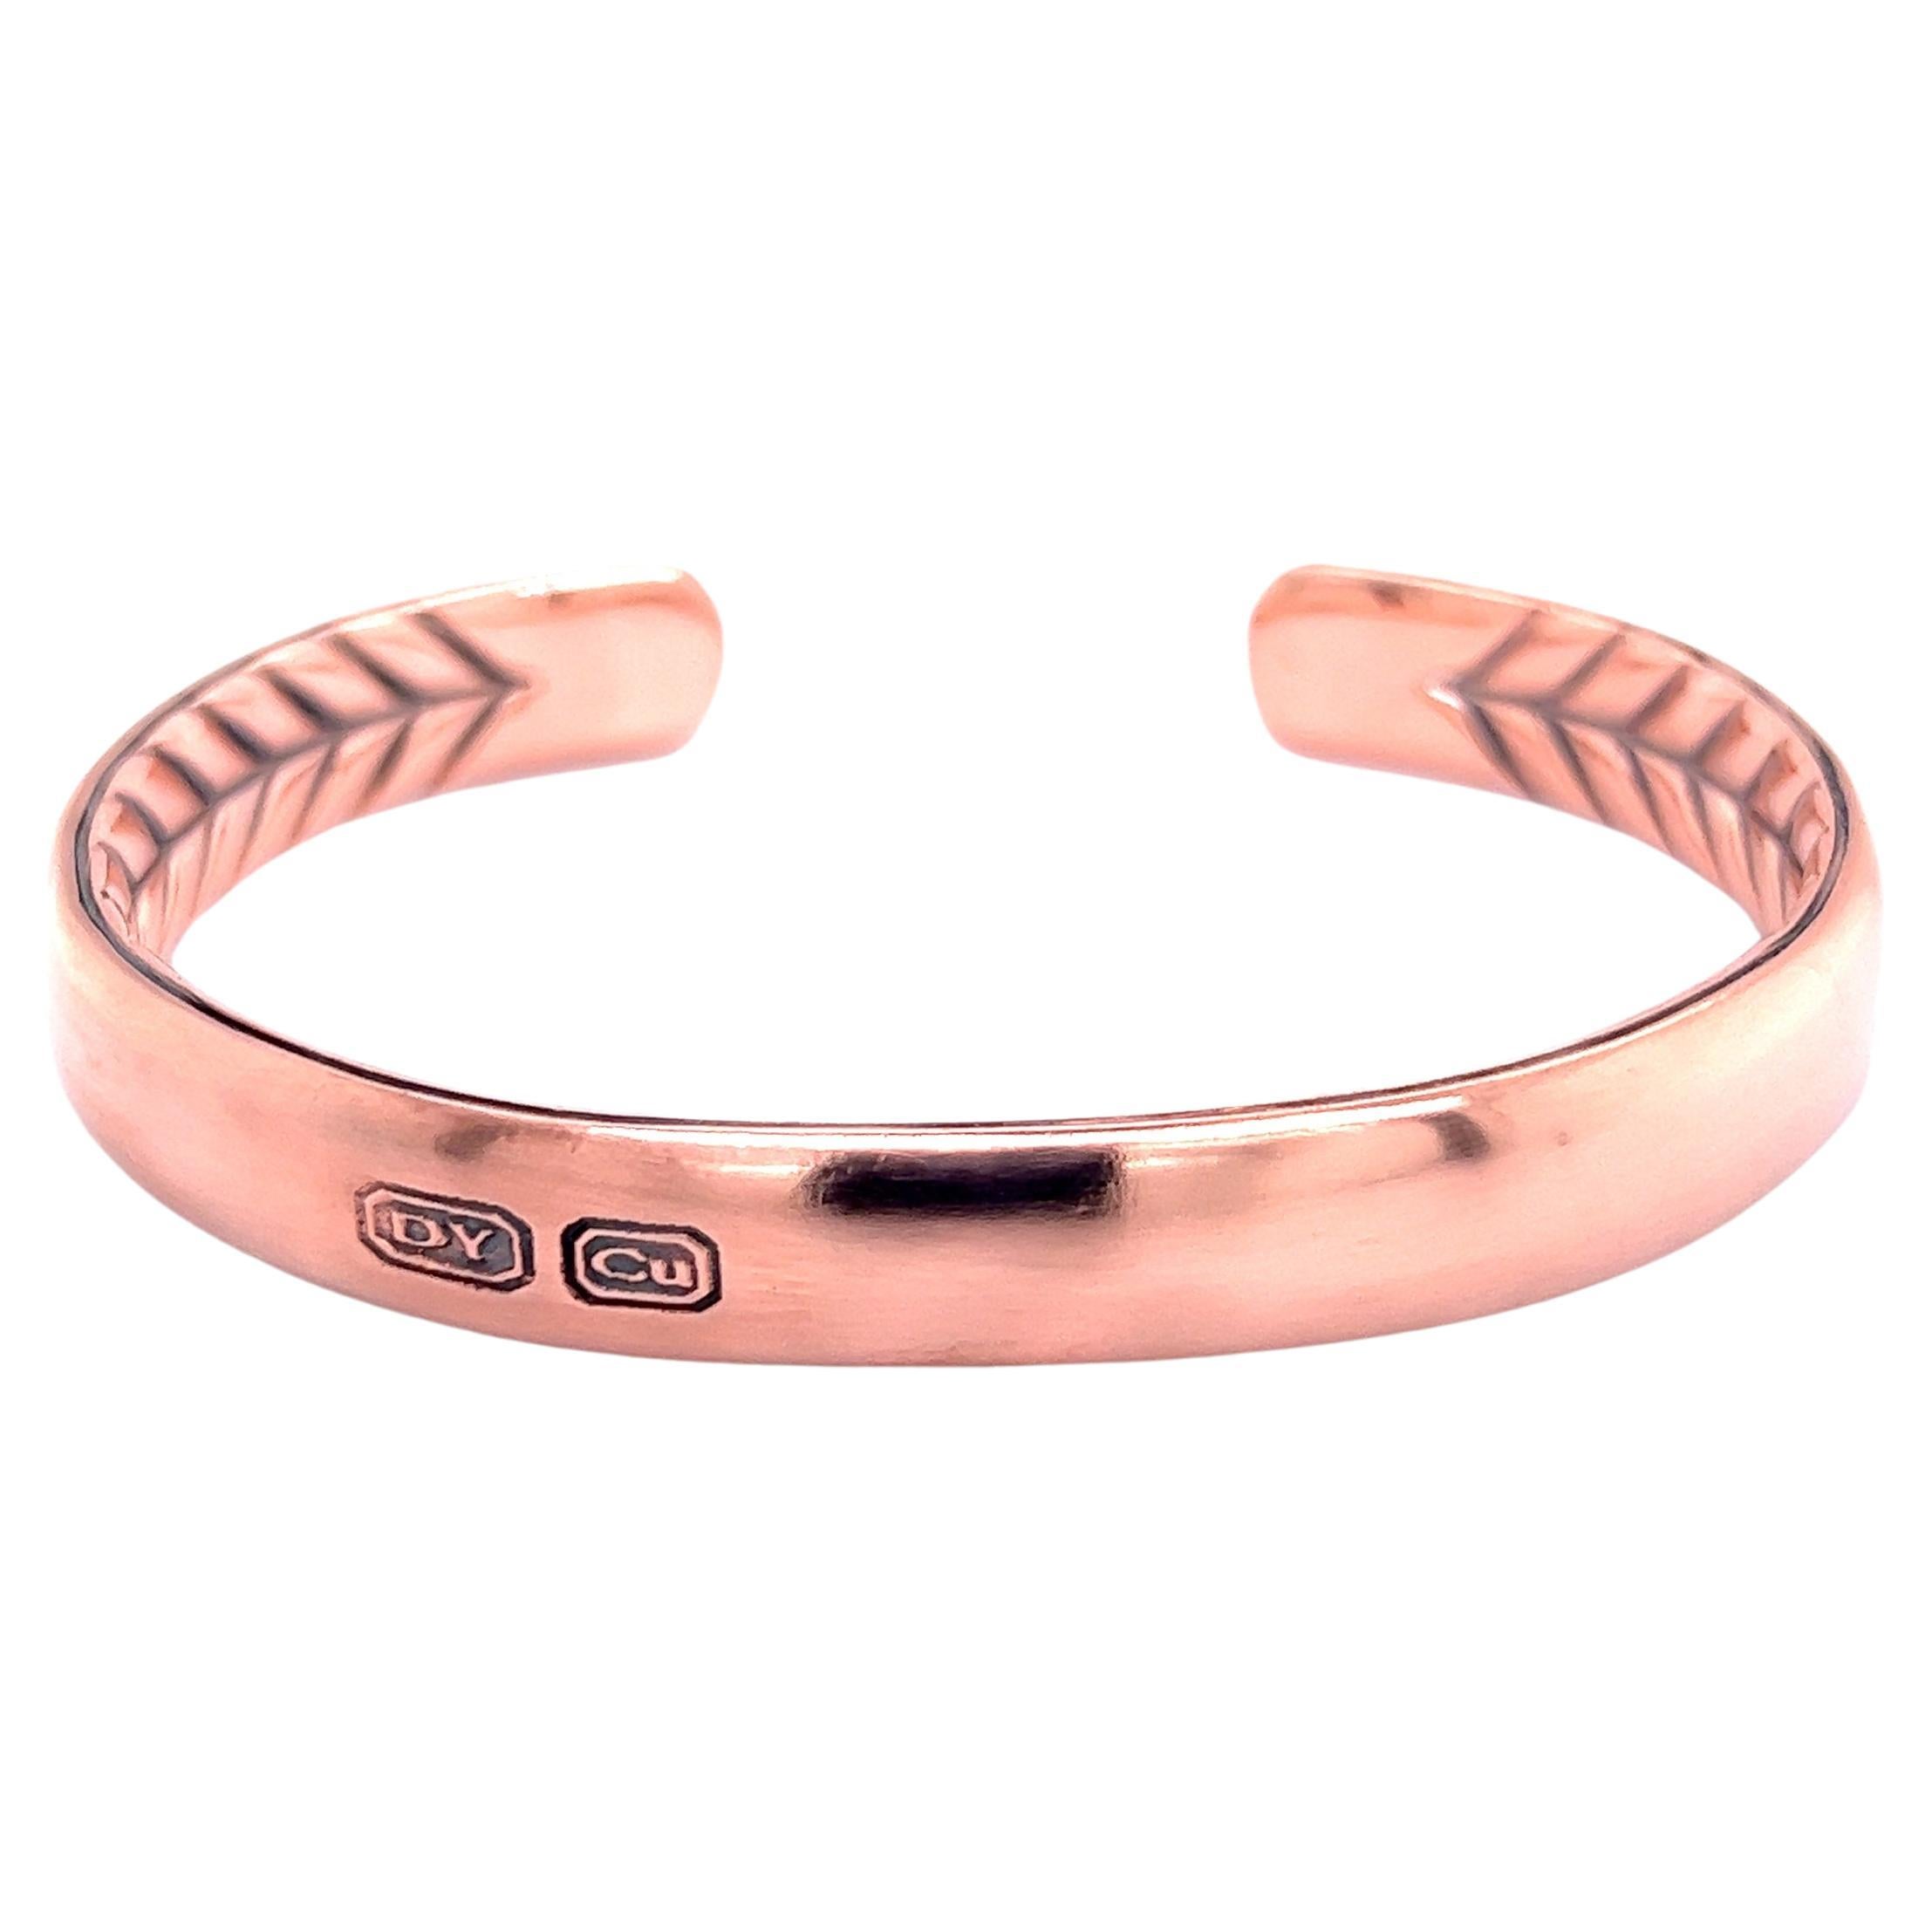 David Yurman Estate Titan Copper Streamline Mens Cuff Bracelet 7.5"